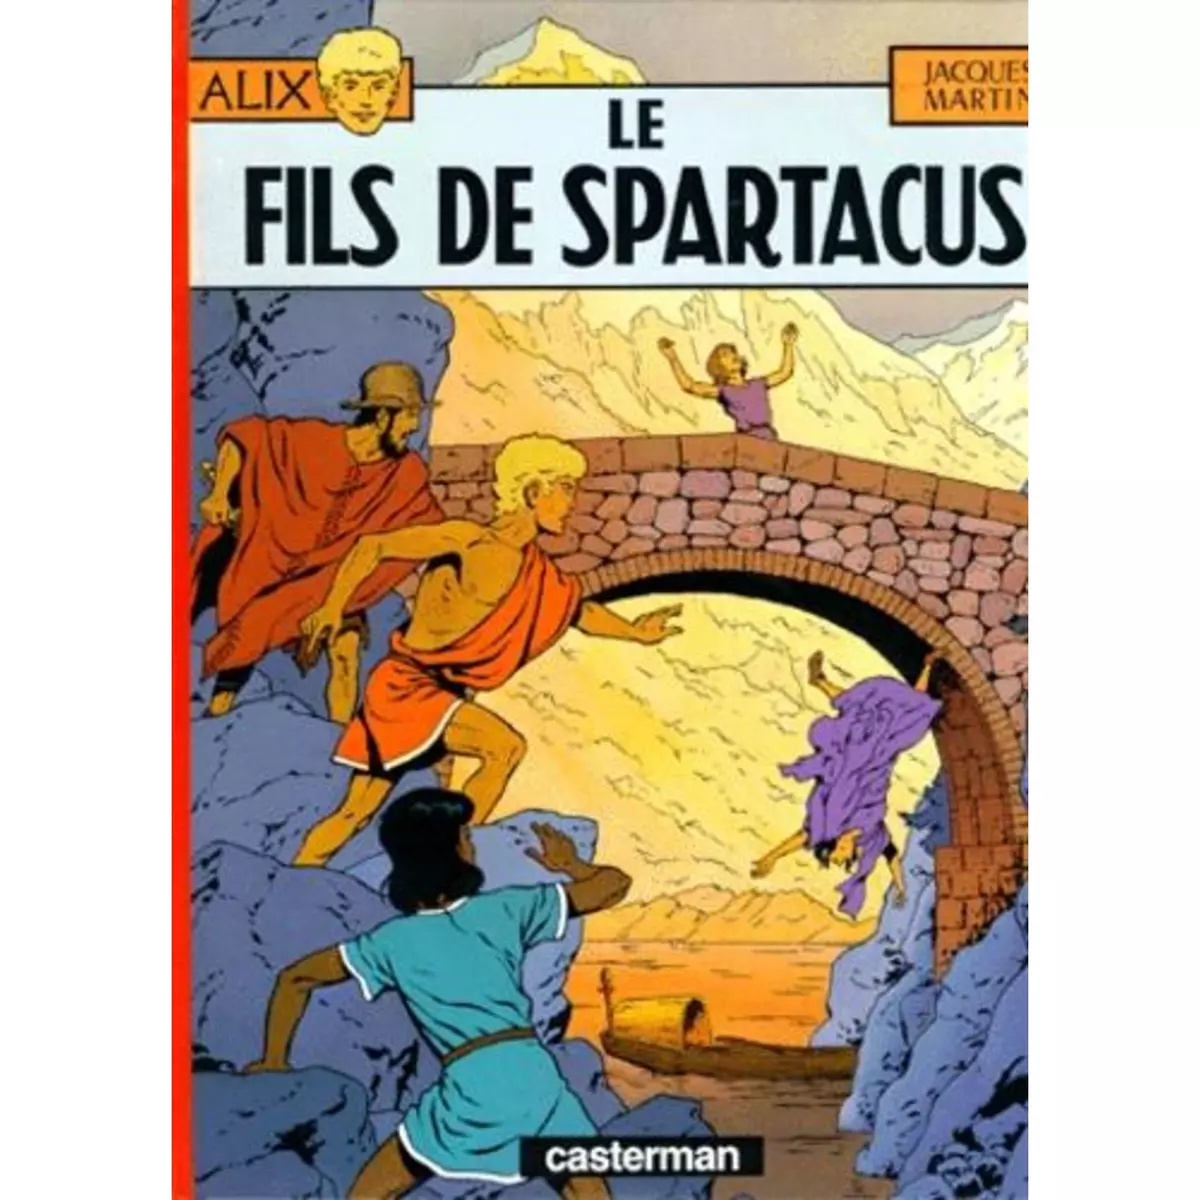  ALIX TOME 12 : LE FILS DE SPARTACUS, Martin Jacques